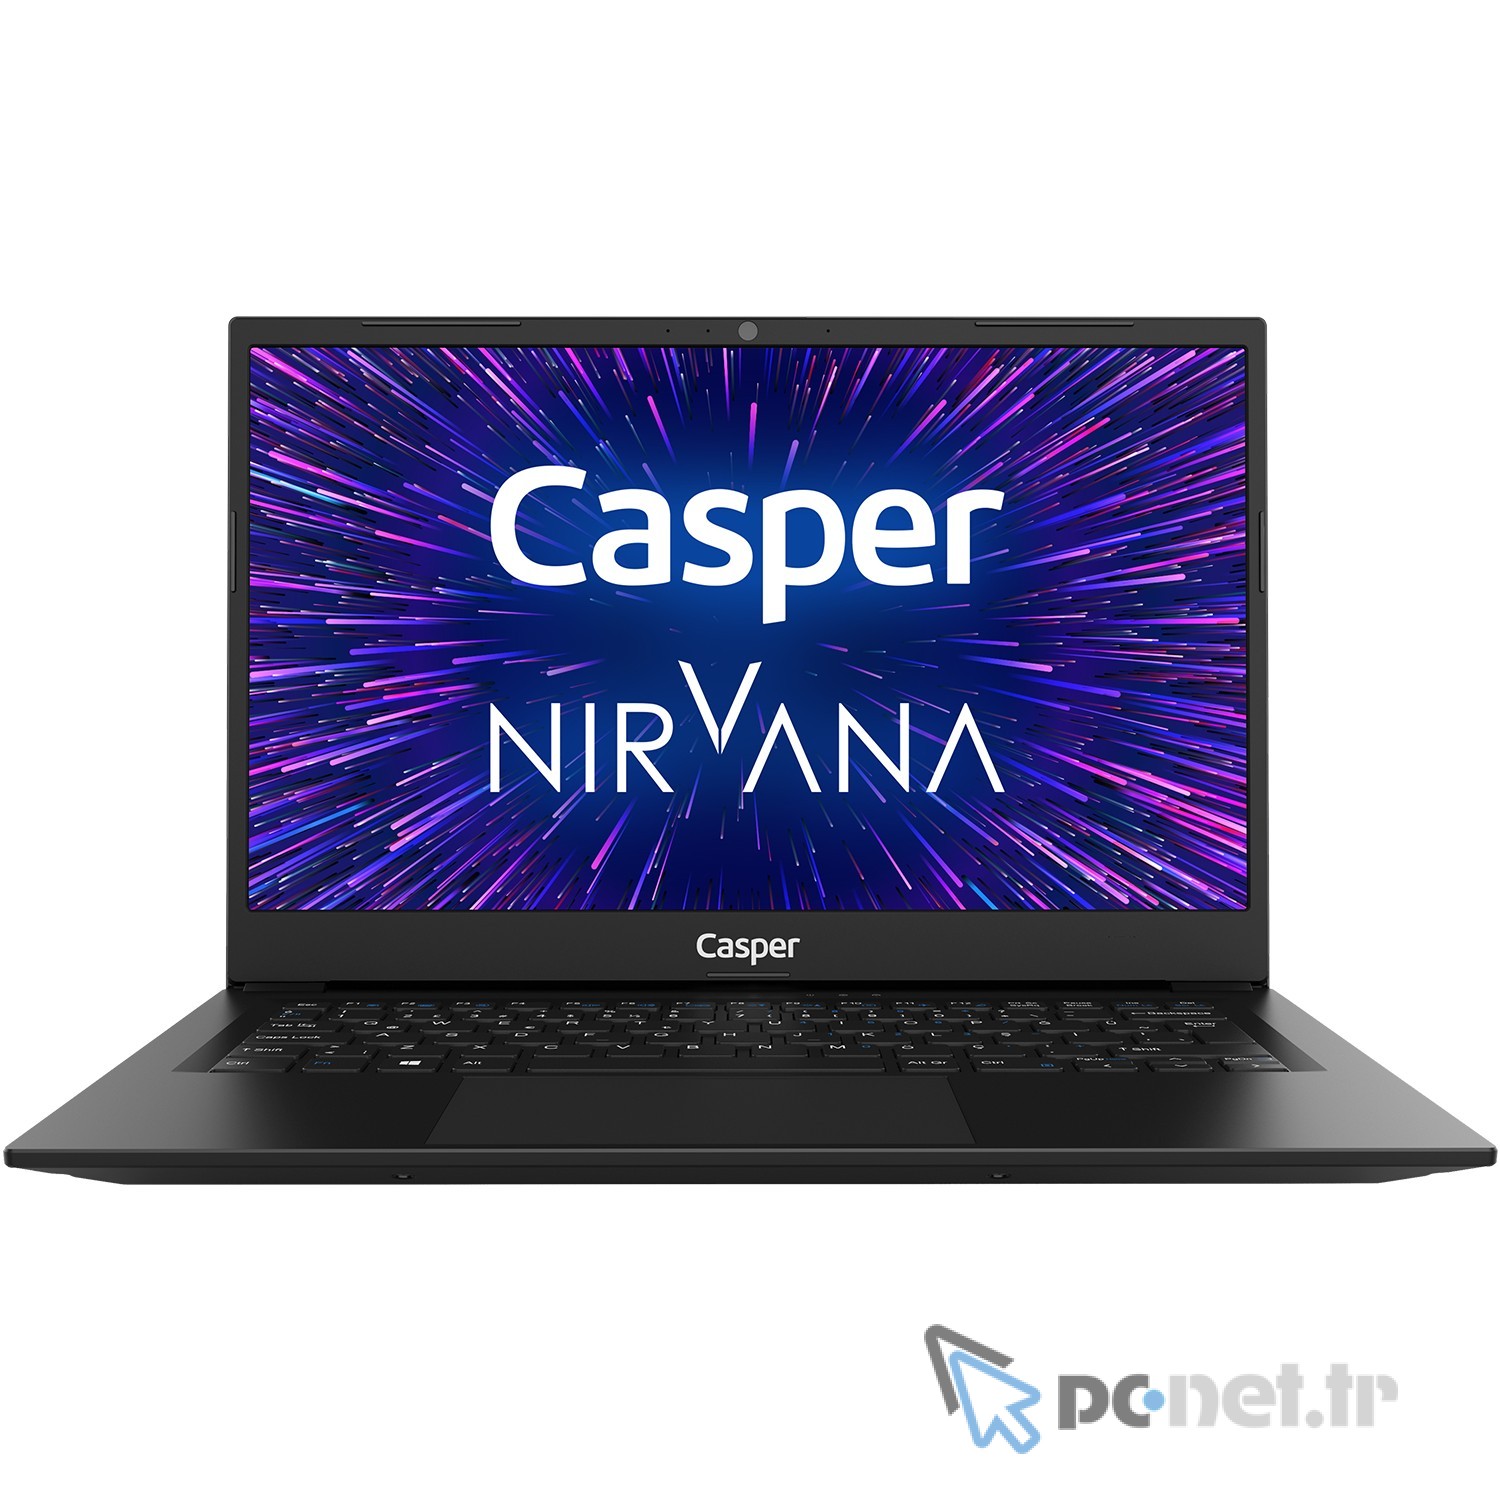 Casper-Nirvana-X400